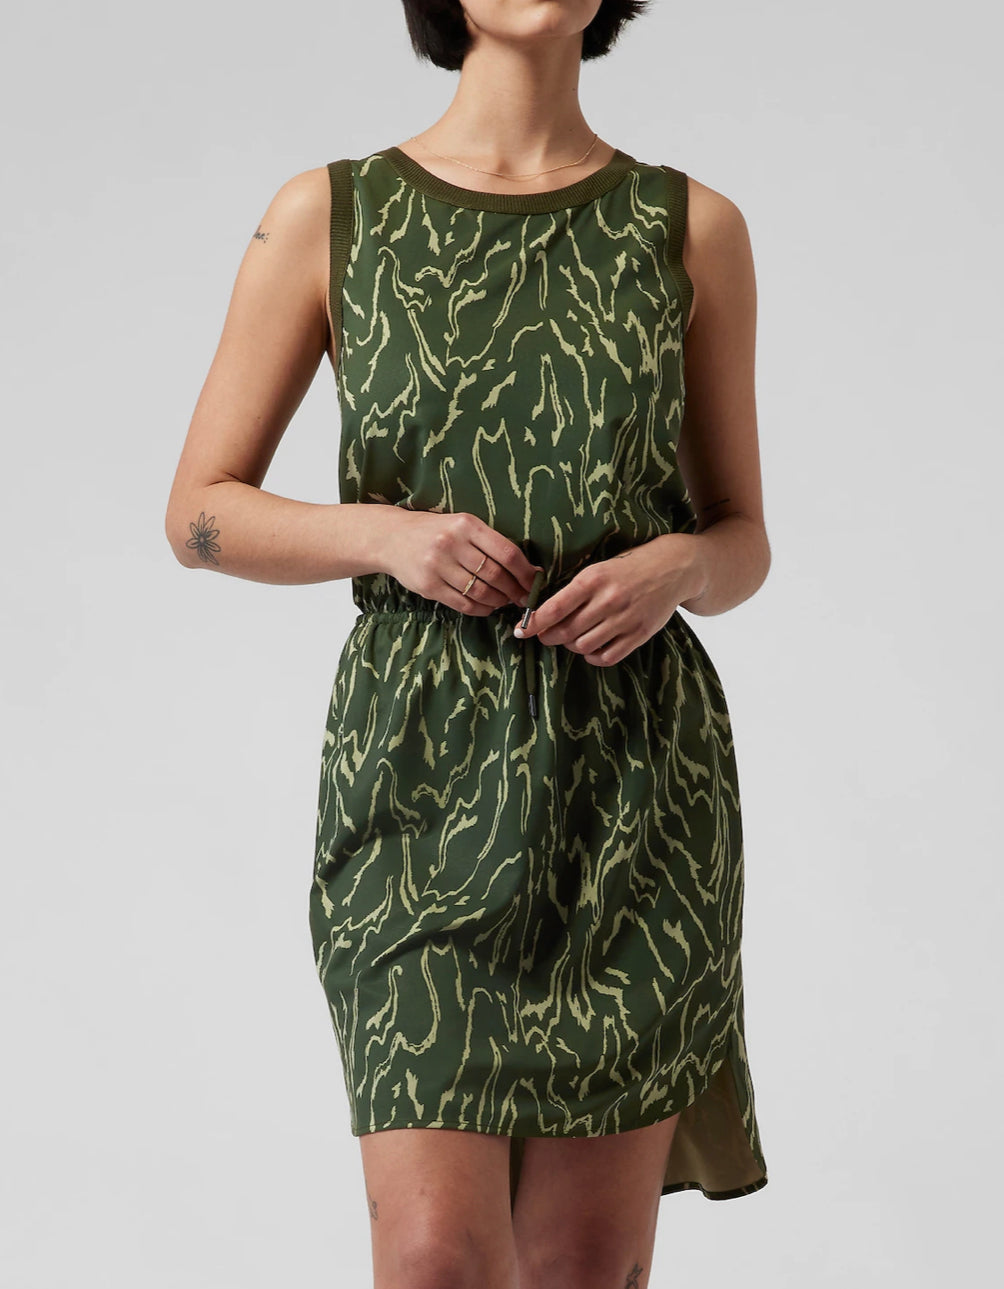 ATHLETA Rincon Printed Dress, Voyage Eucalyptus Olive